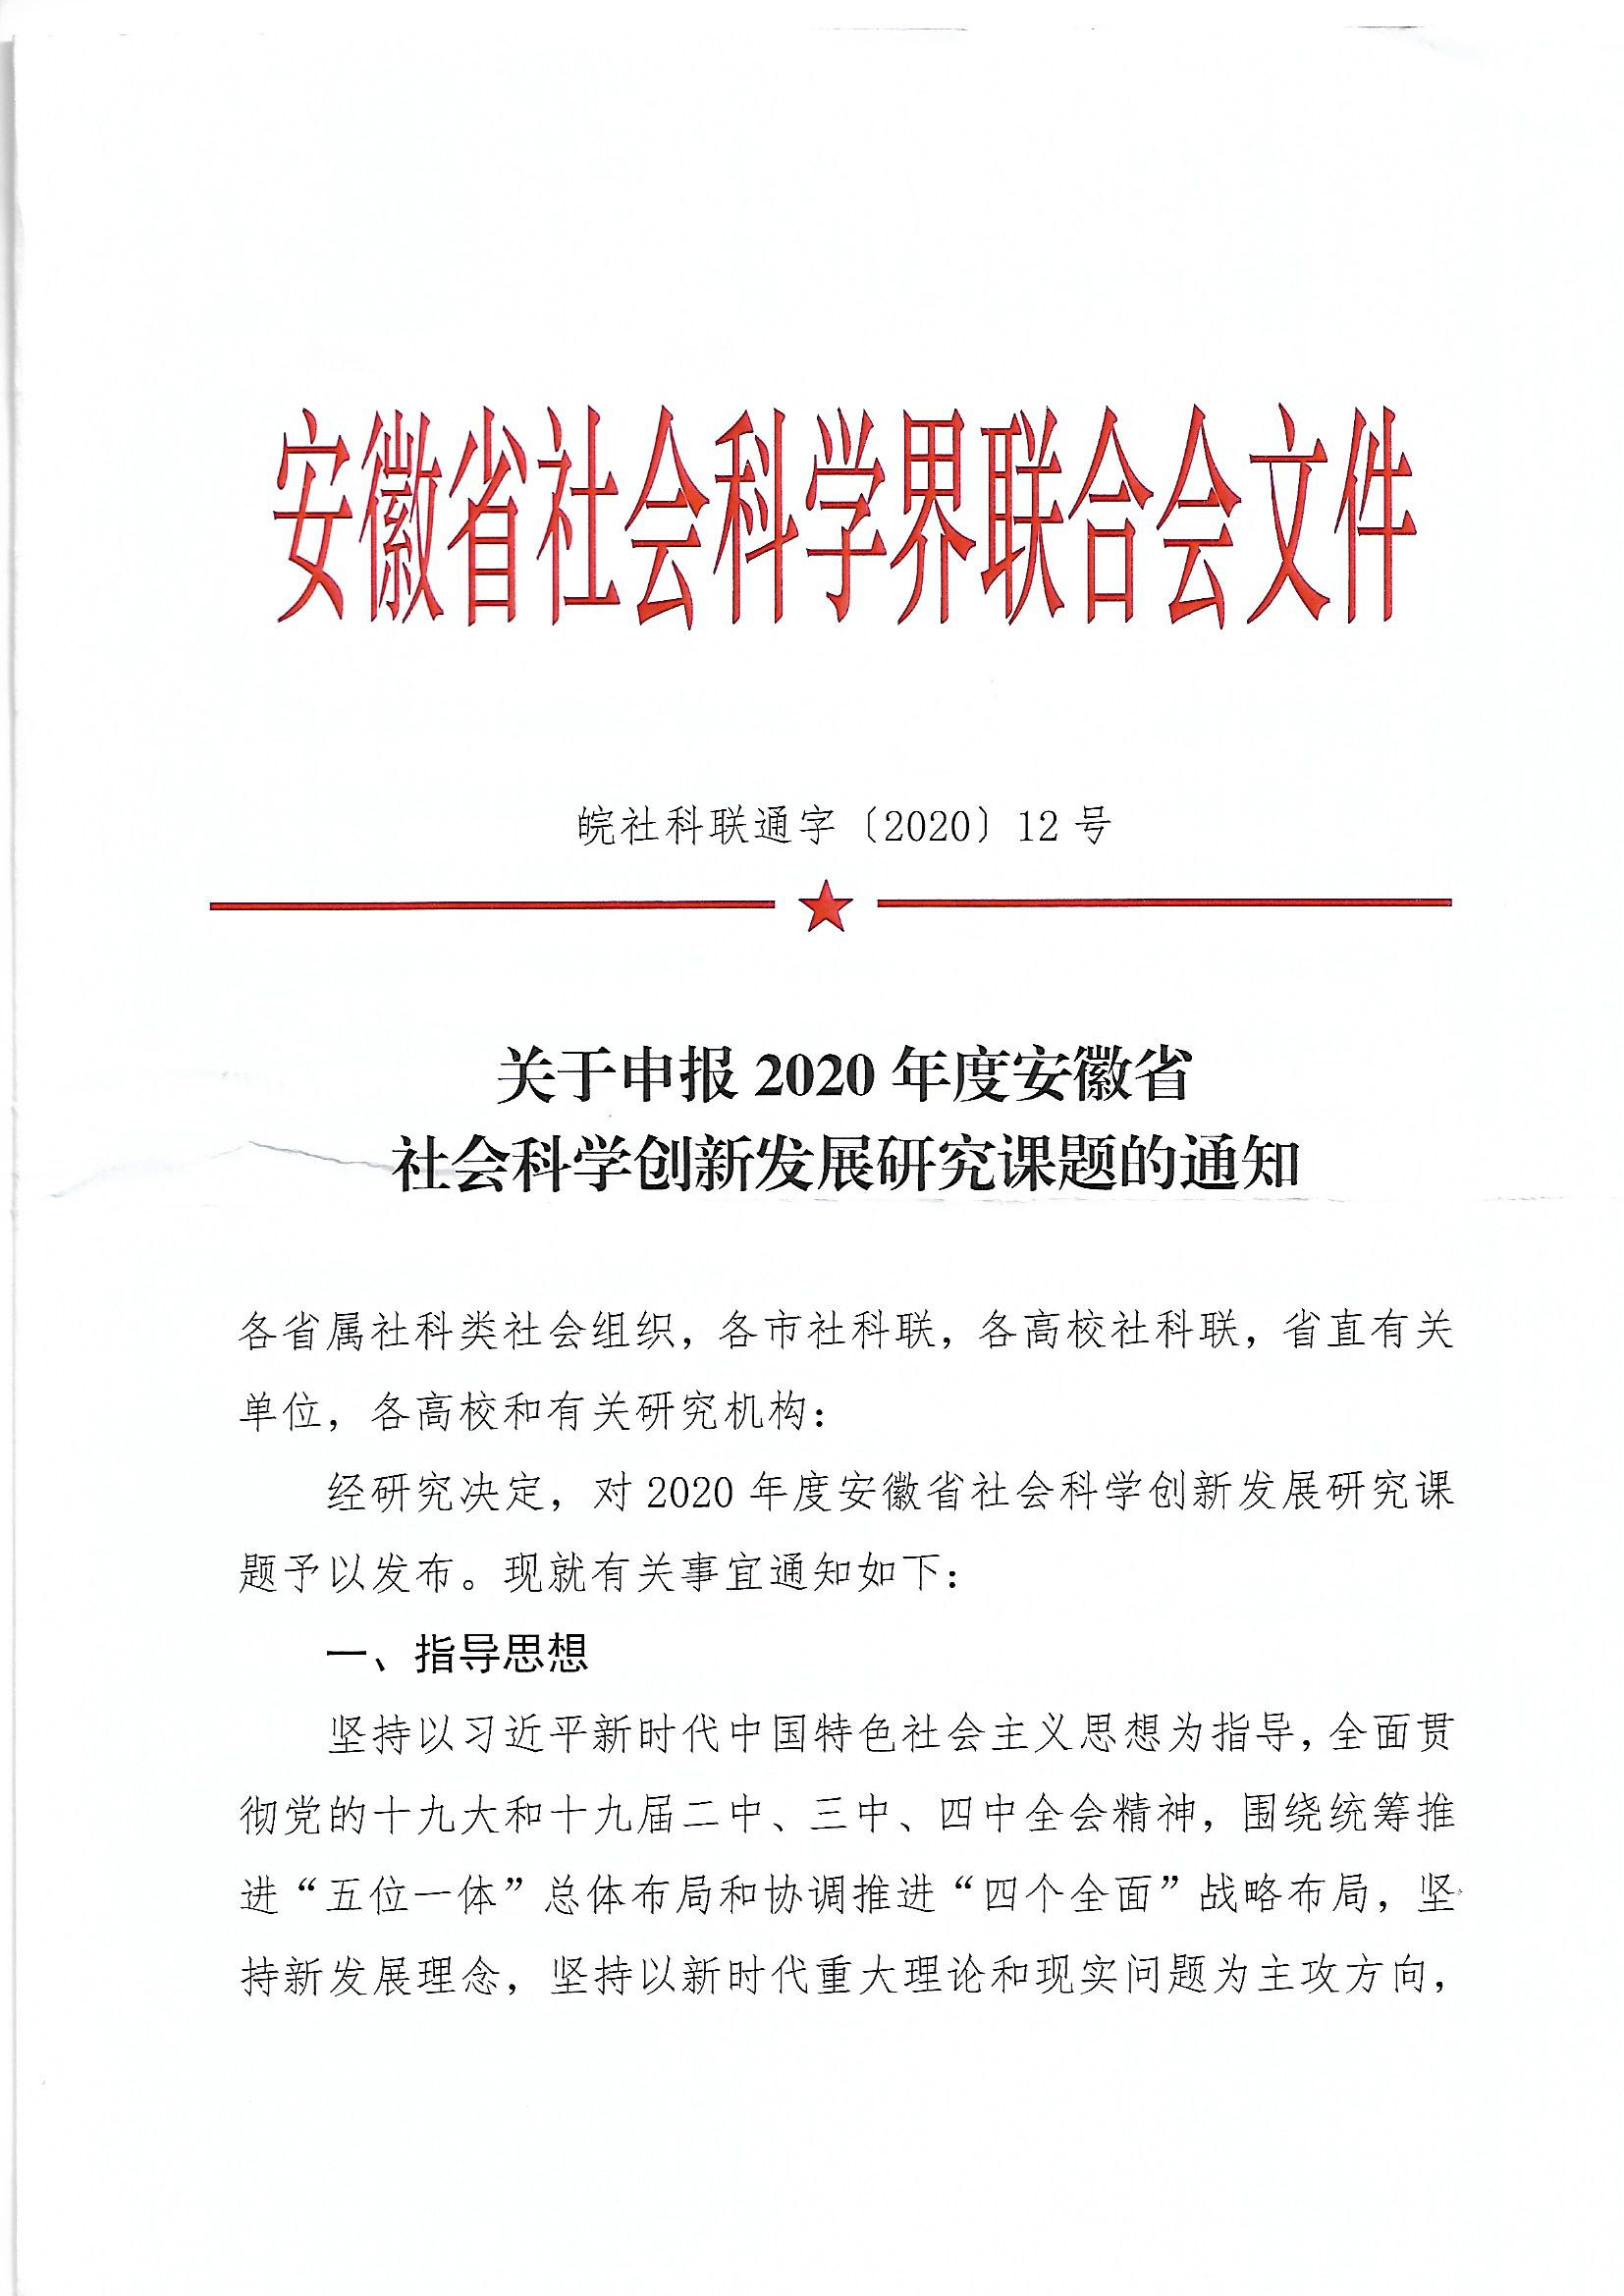 关于申报2020年度安徽省社会科学创新发展研究课题的通知